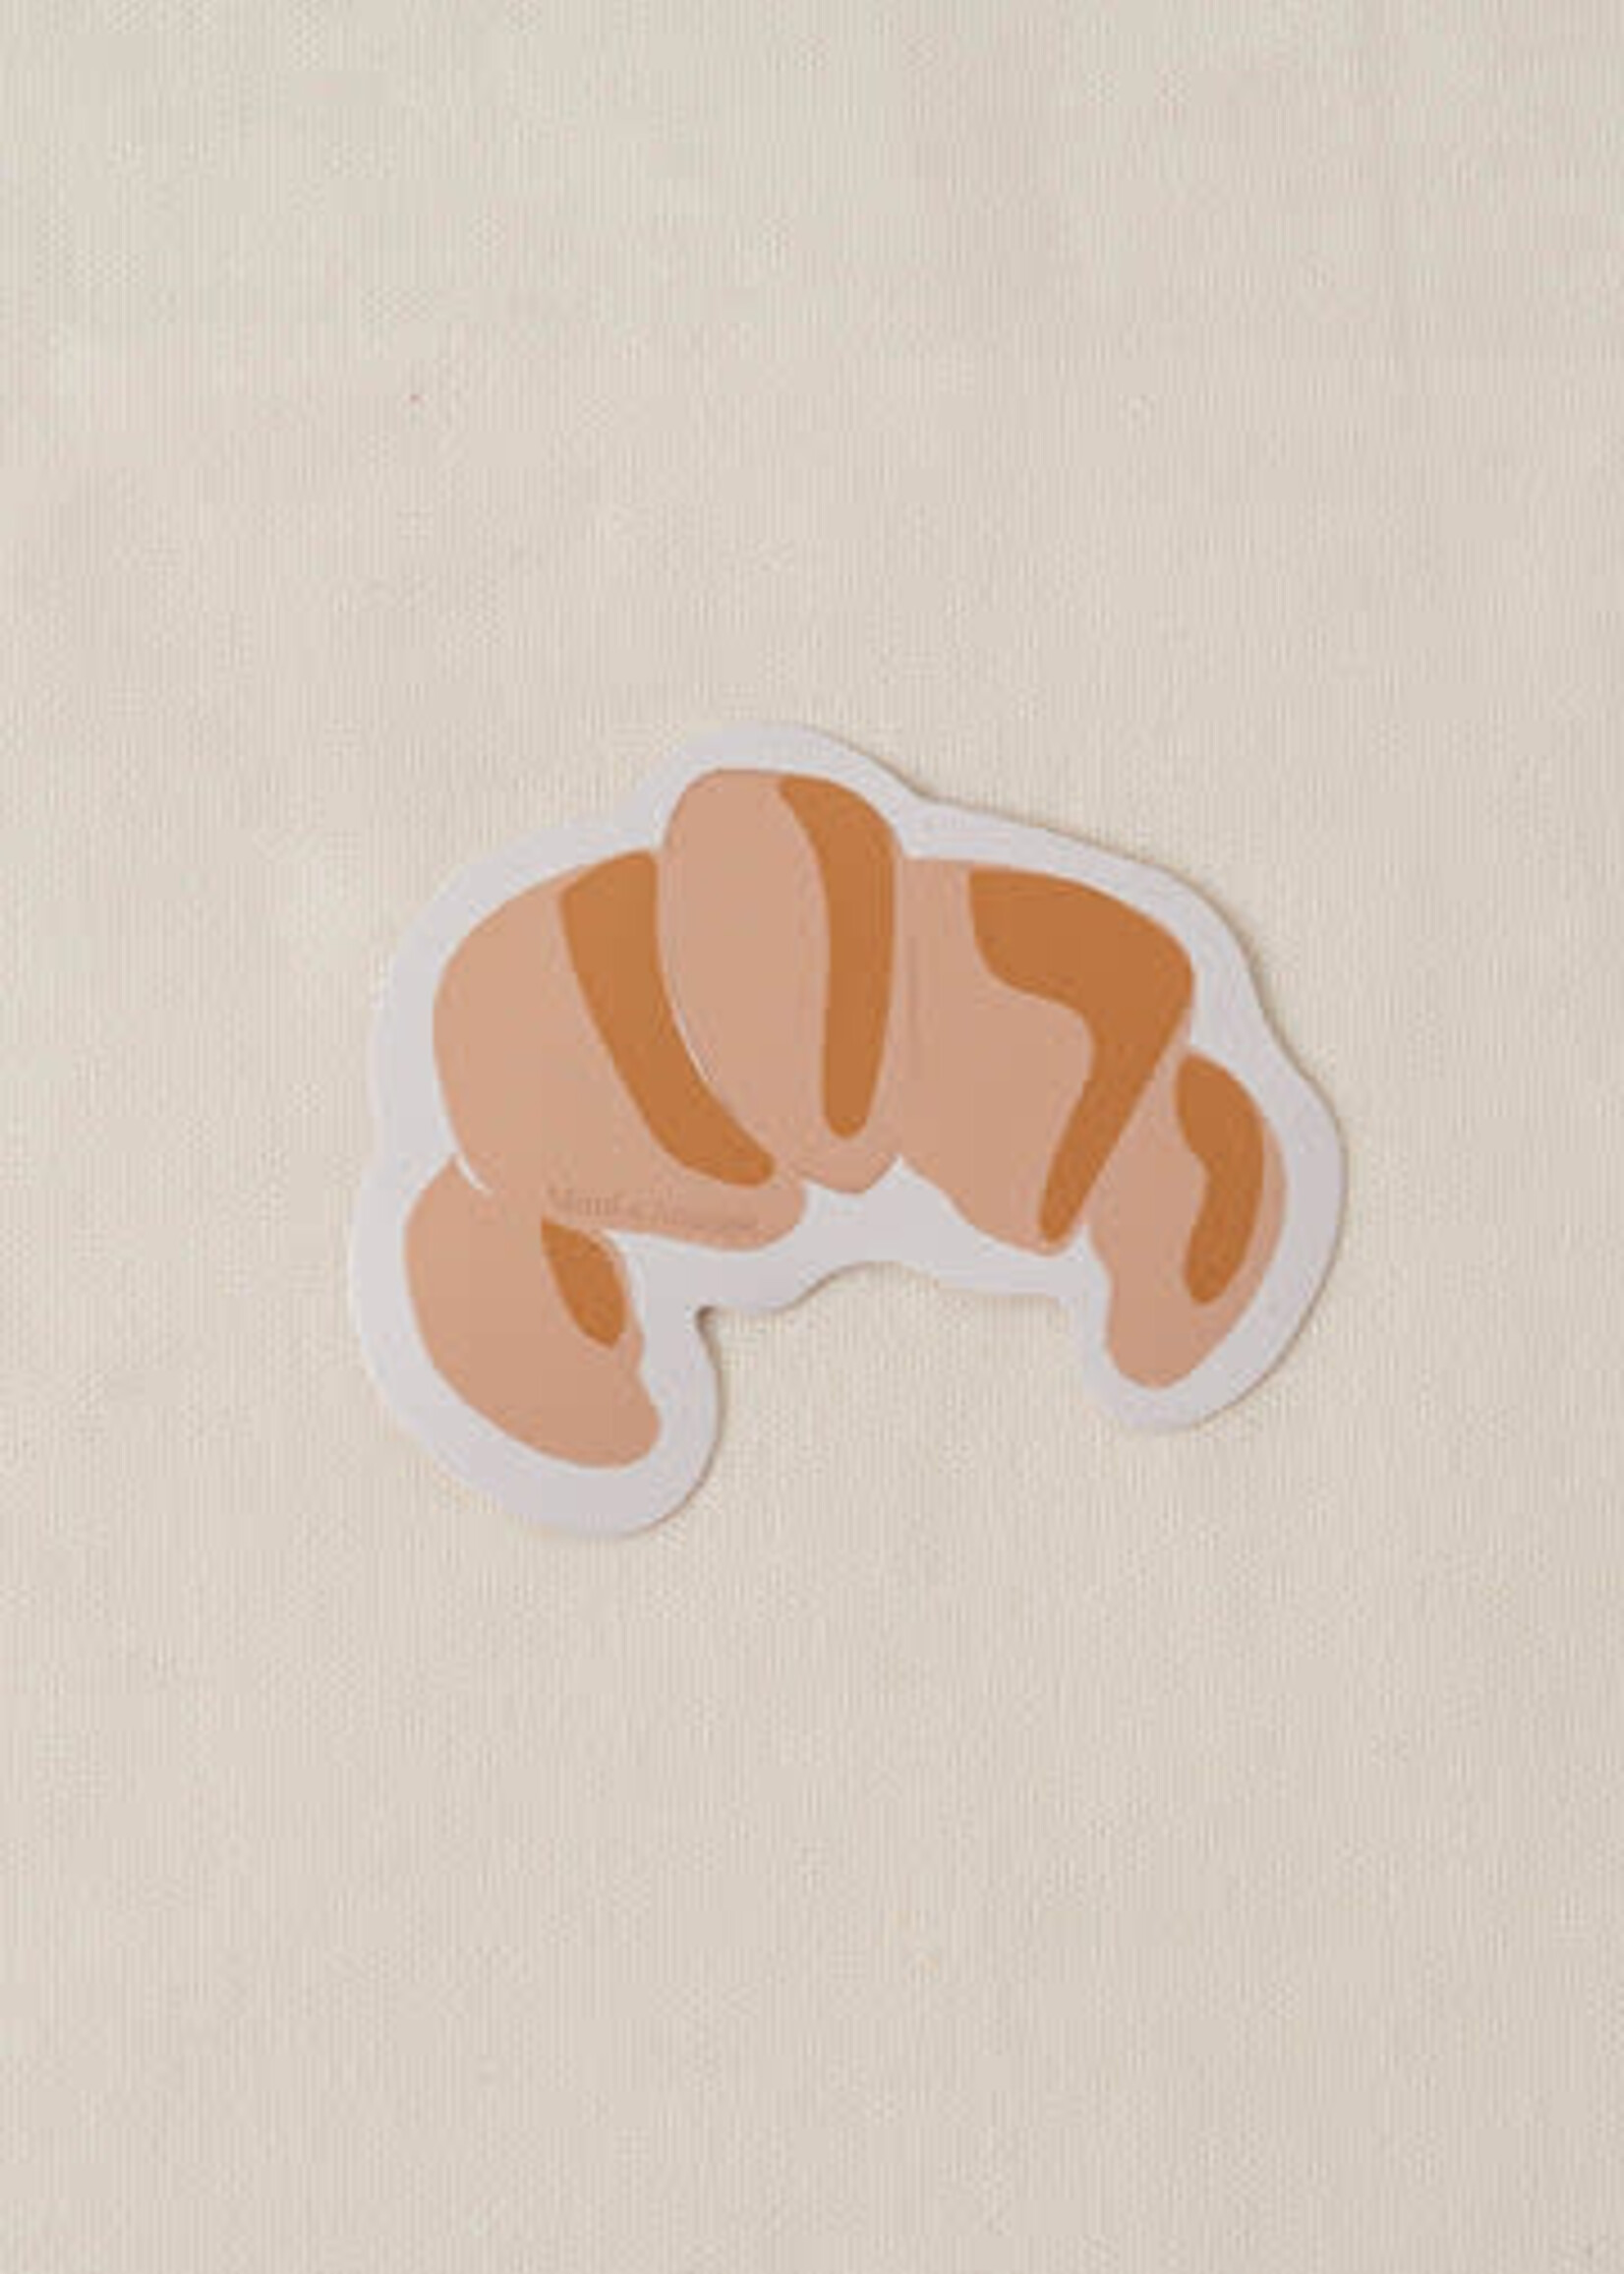 Mimi & August Croissant - Vinyl Sticker